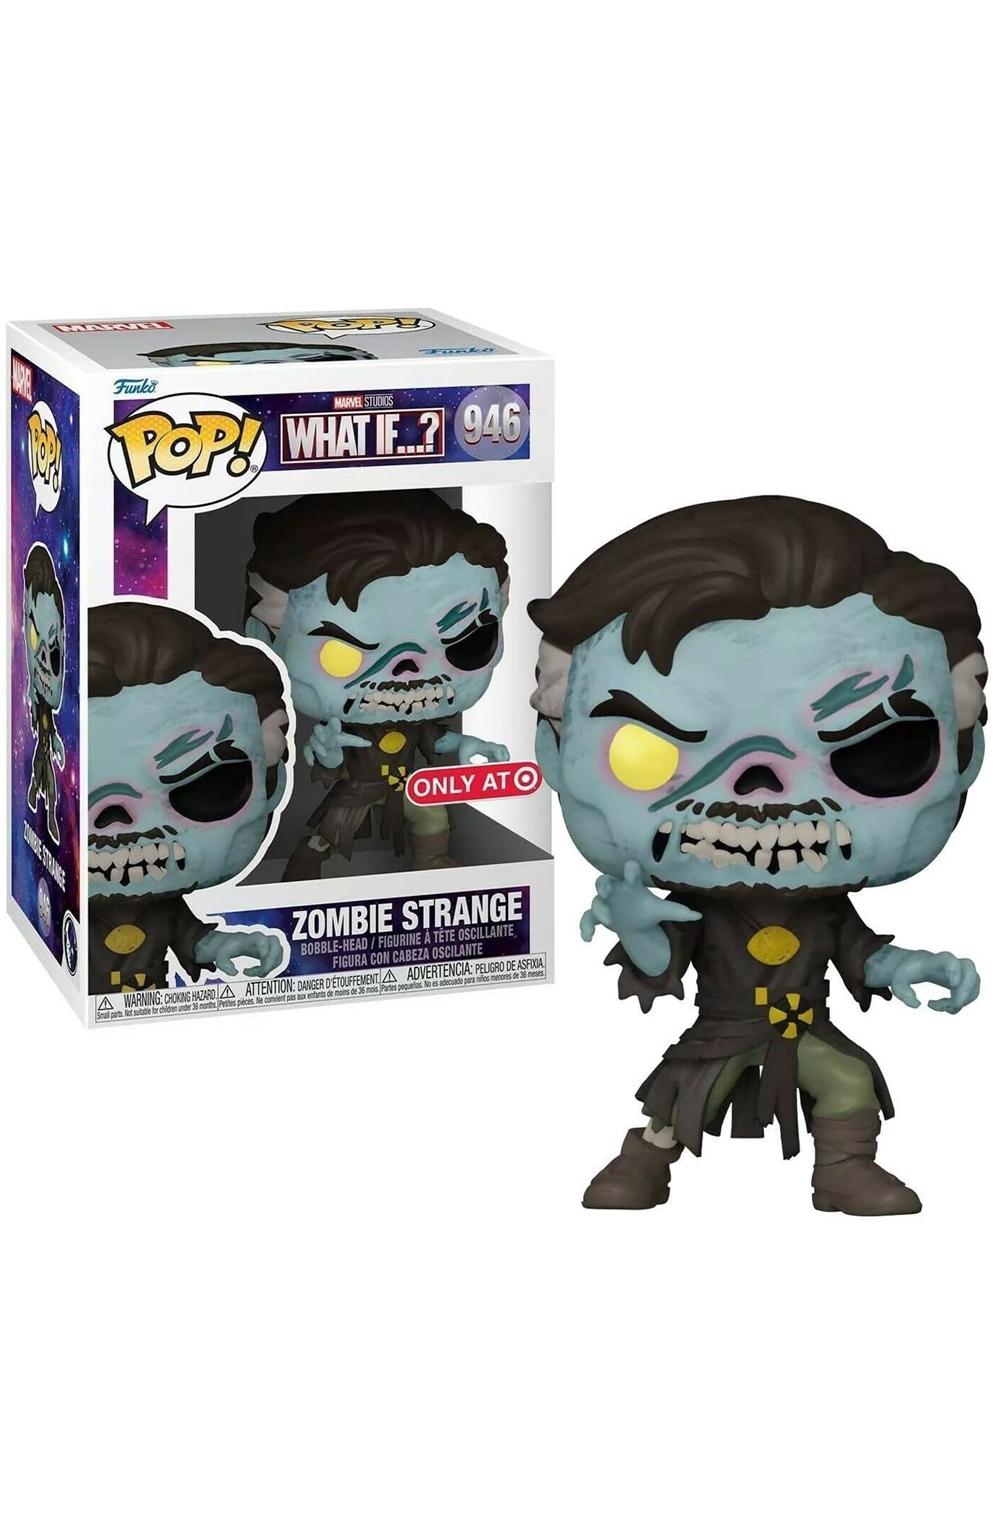 Pop 946 Zombie Strange Target Exclusive 